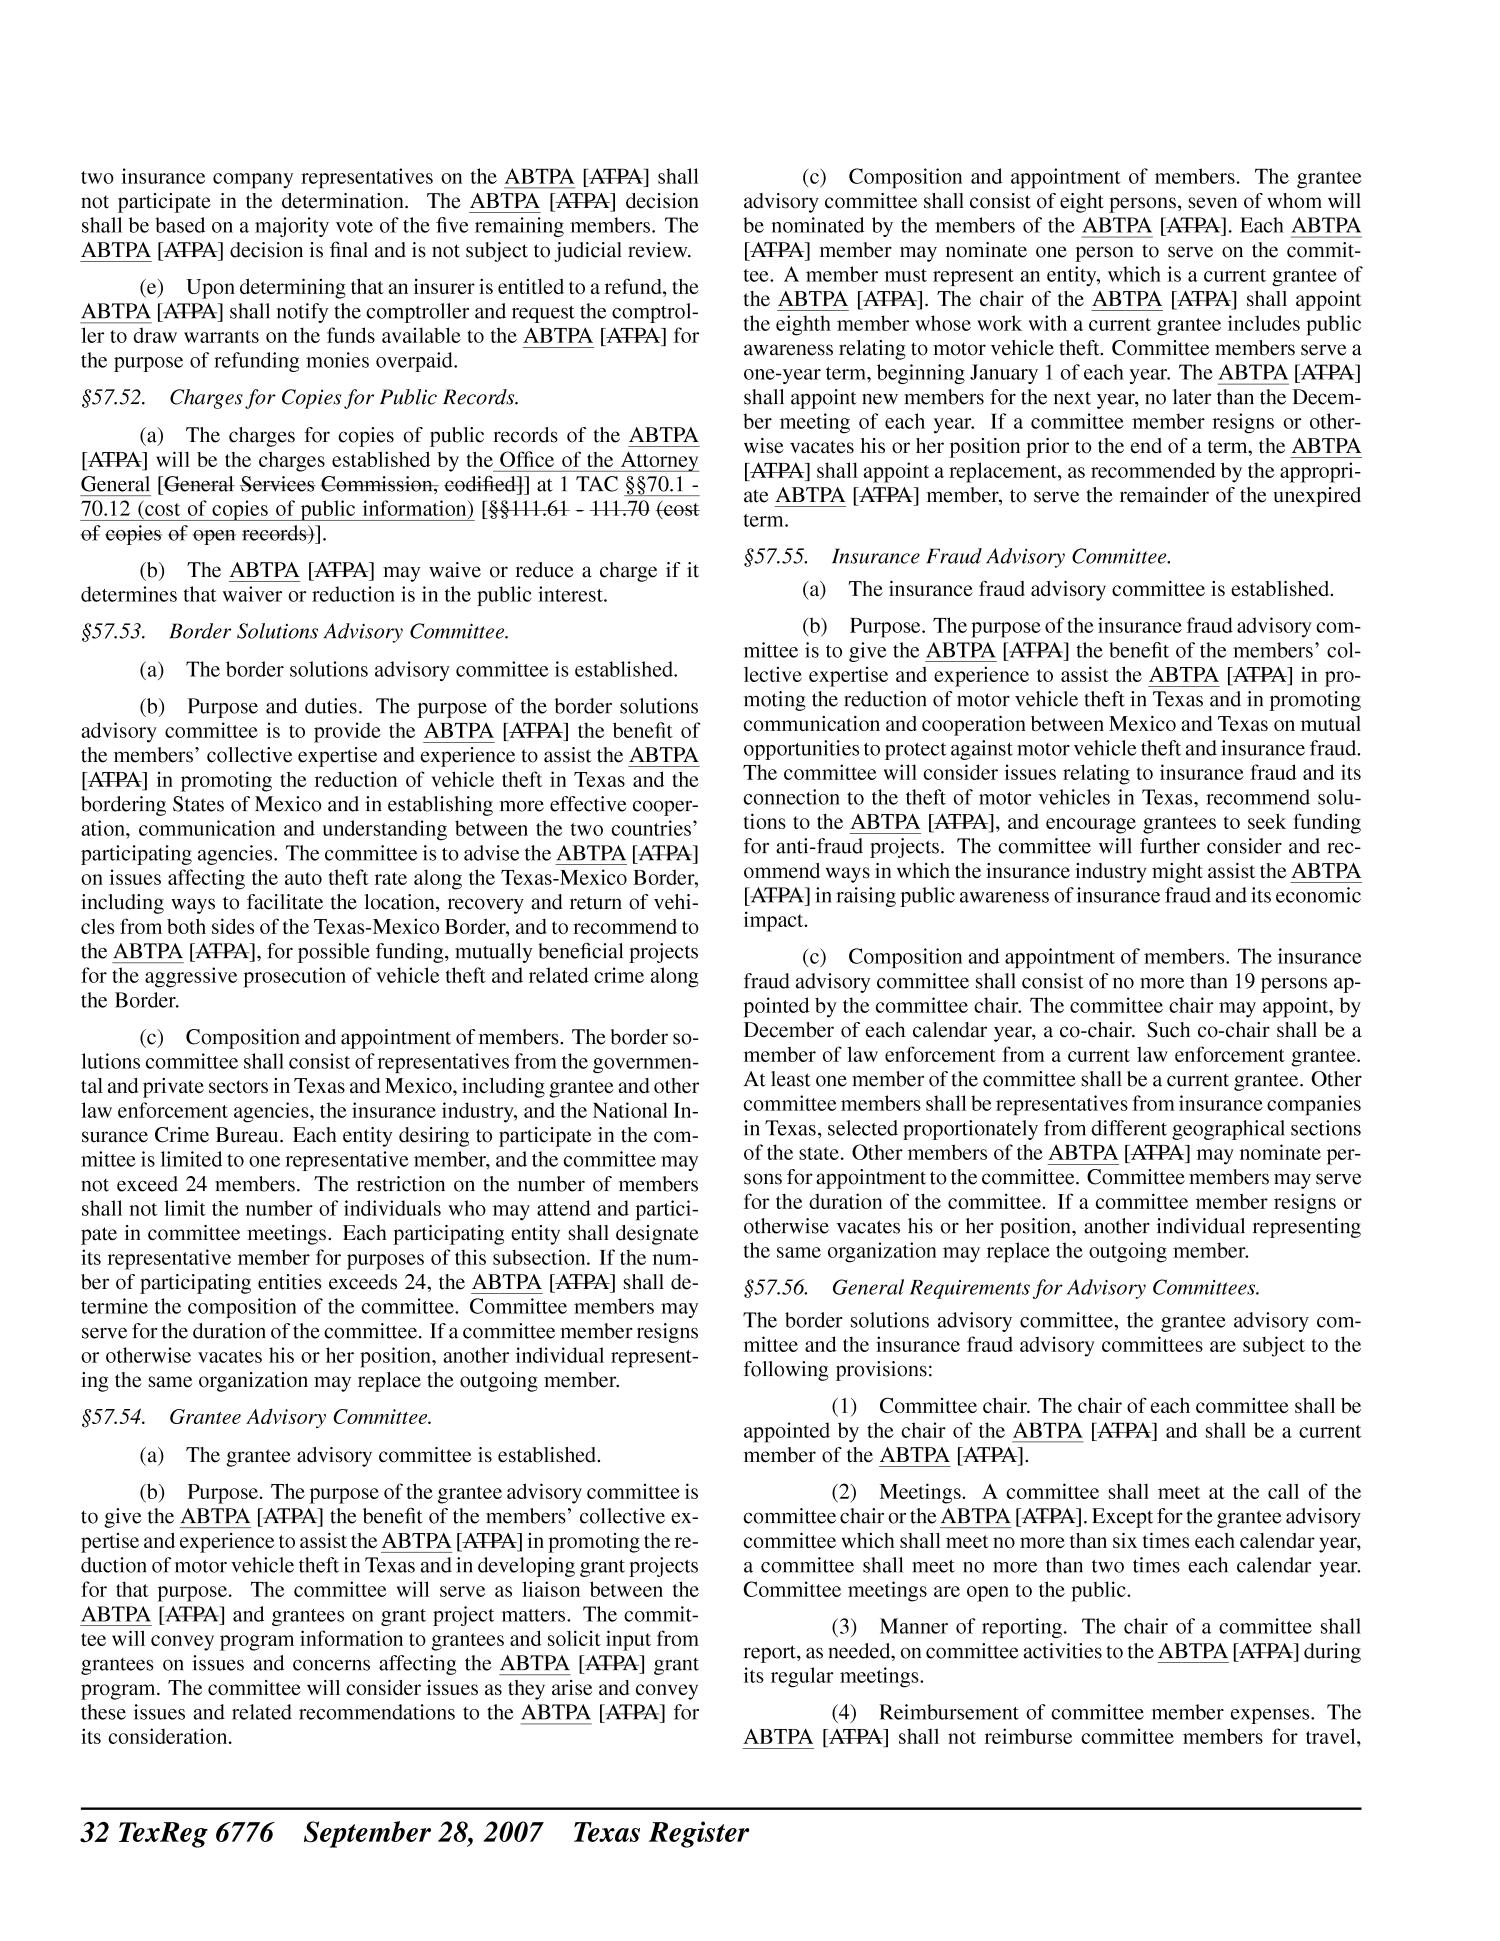 Texas Register, Volume 32, Number 39, Pages 6689-6904, September 28, 2007
                                                
                                                    6776
                                                